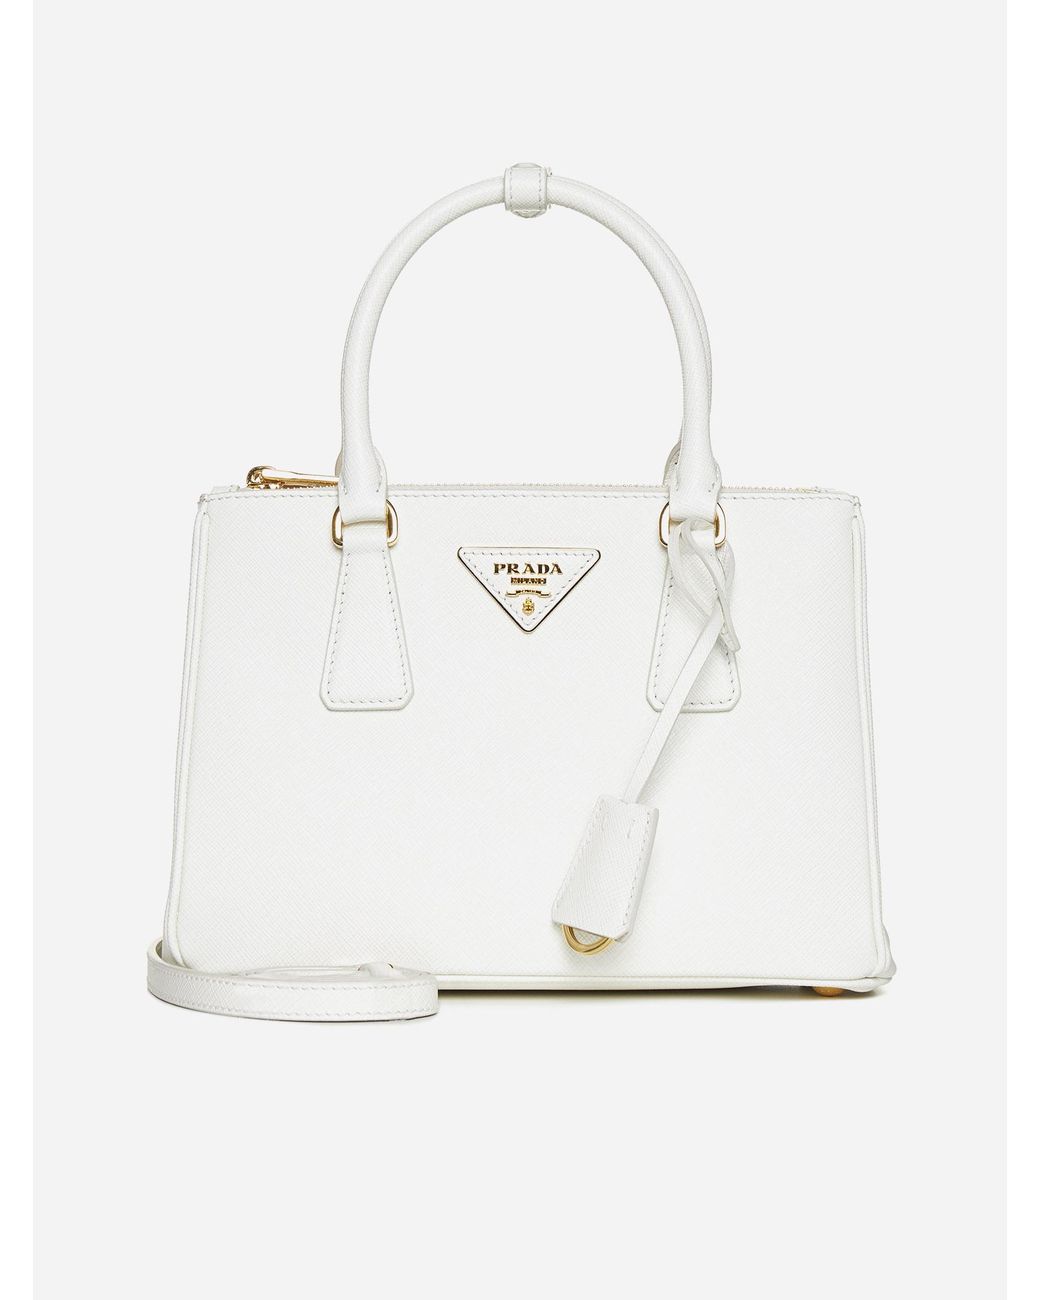 Prada Galleria Mini Saffiano Leather Bag in White | Lyst